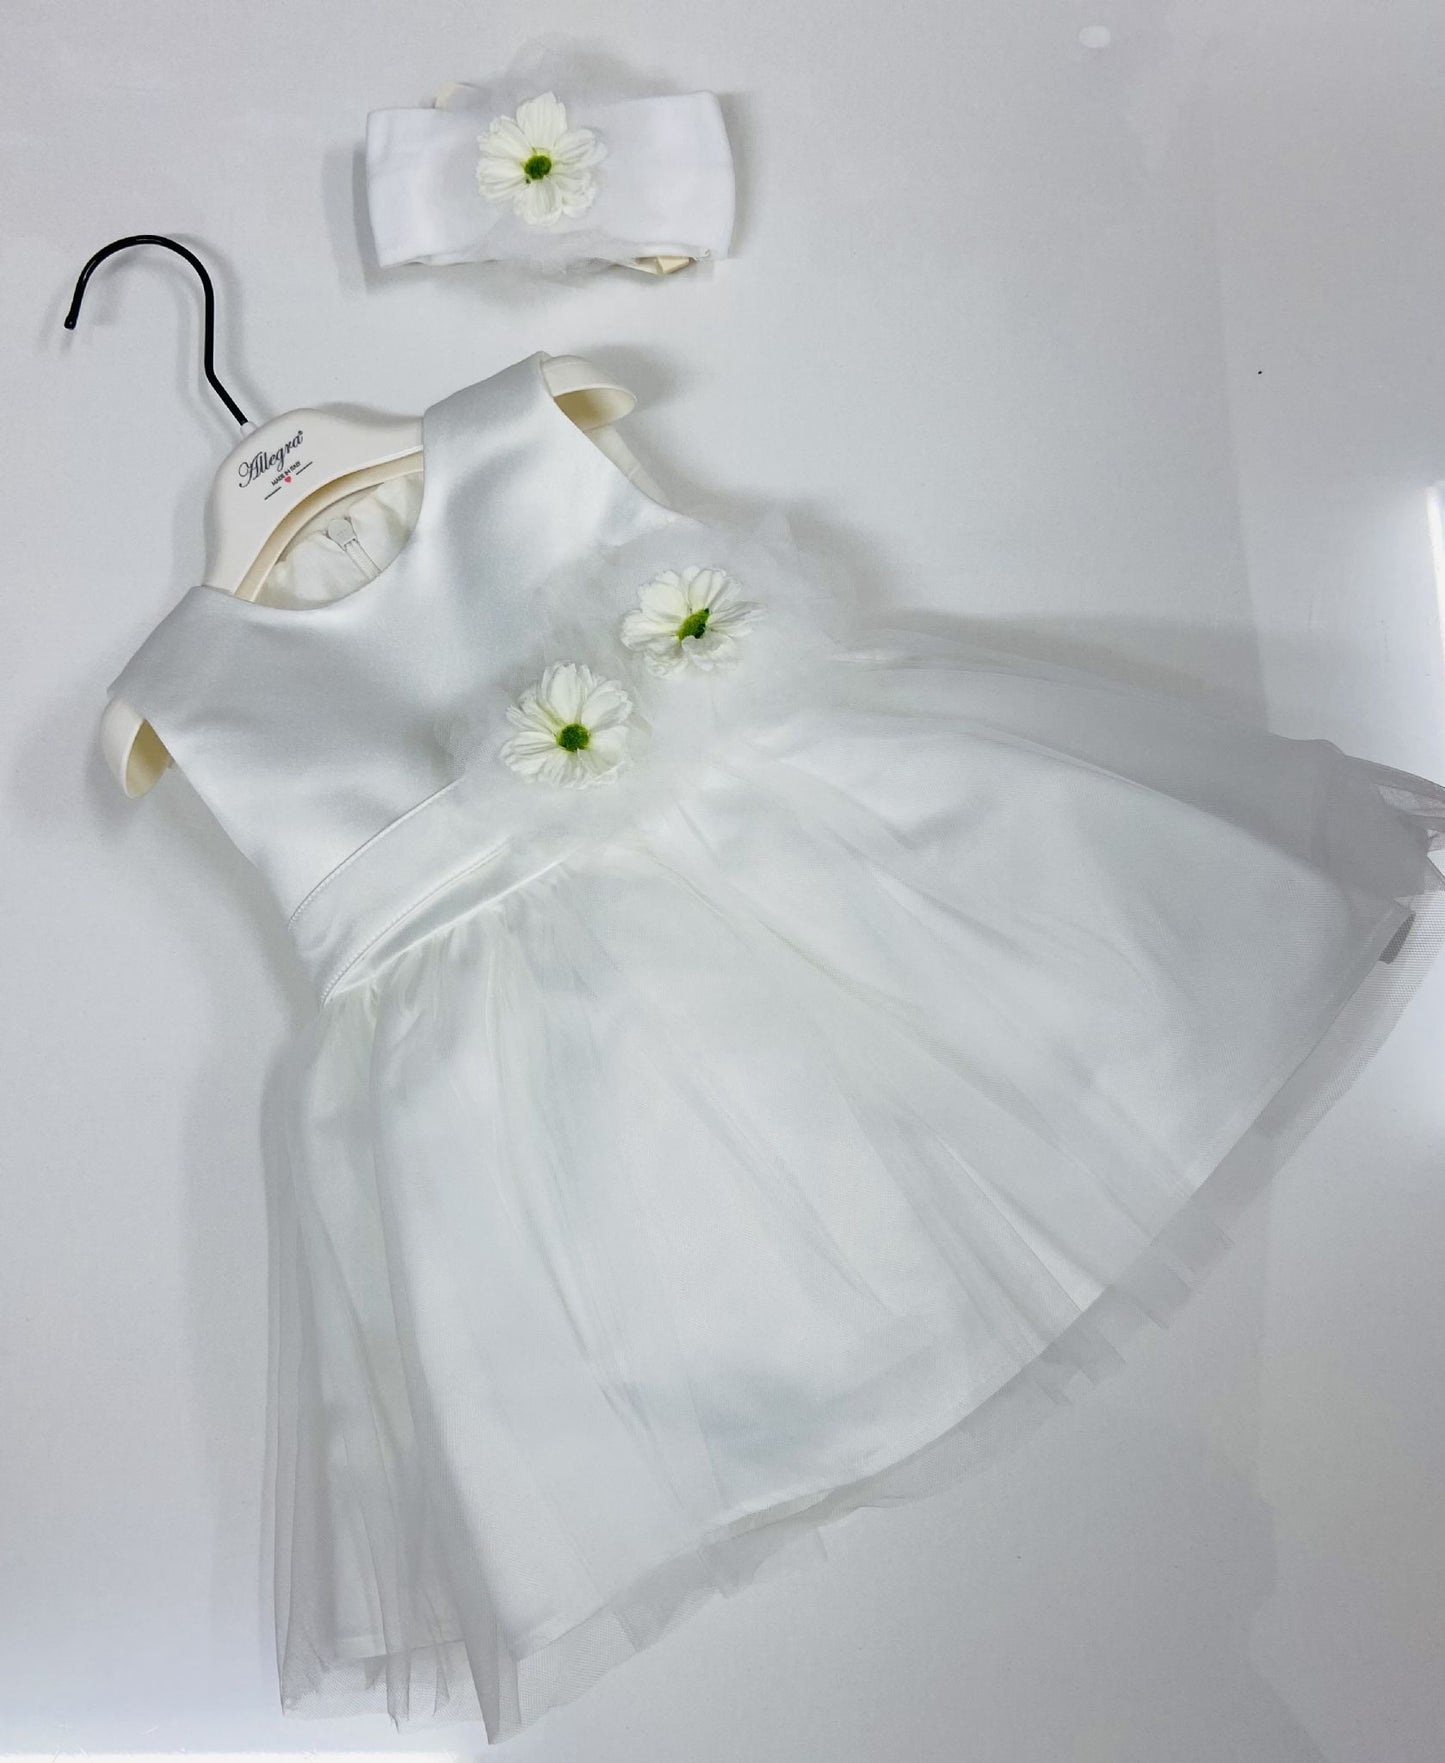 Allegra & Gastone Girls Ivory Occasion / Flower Dress